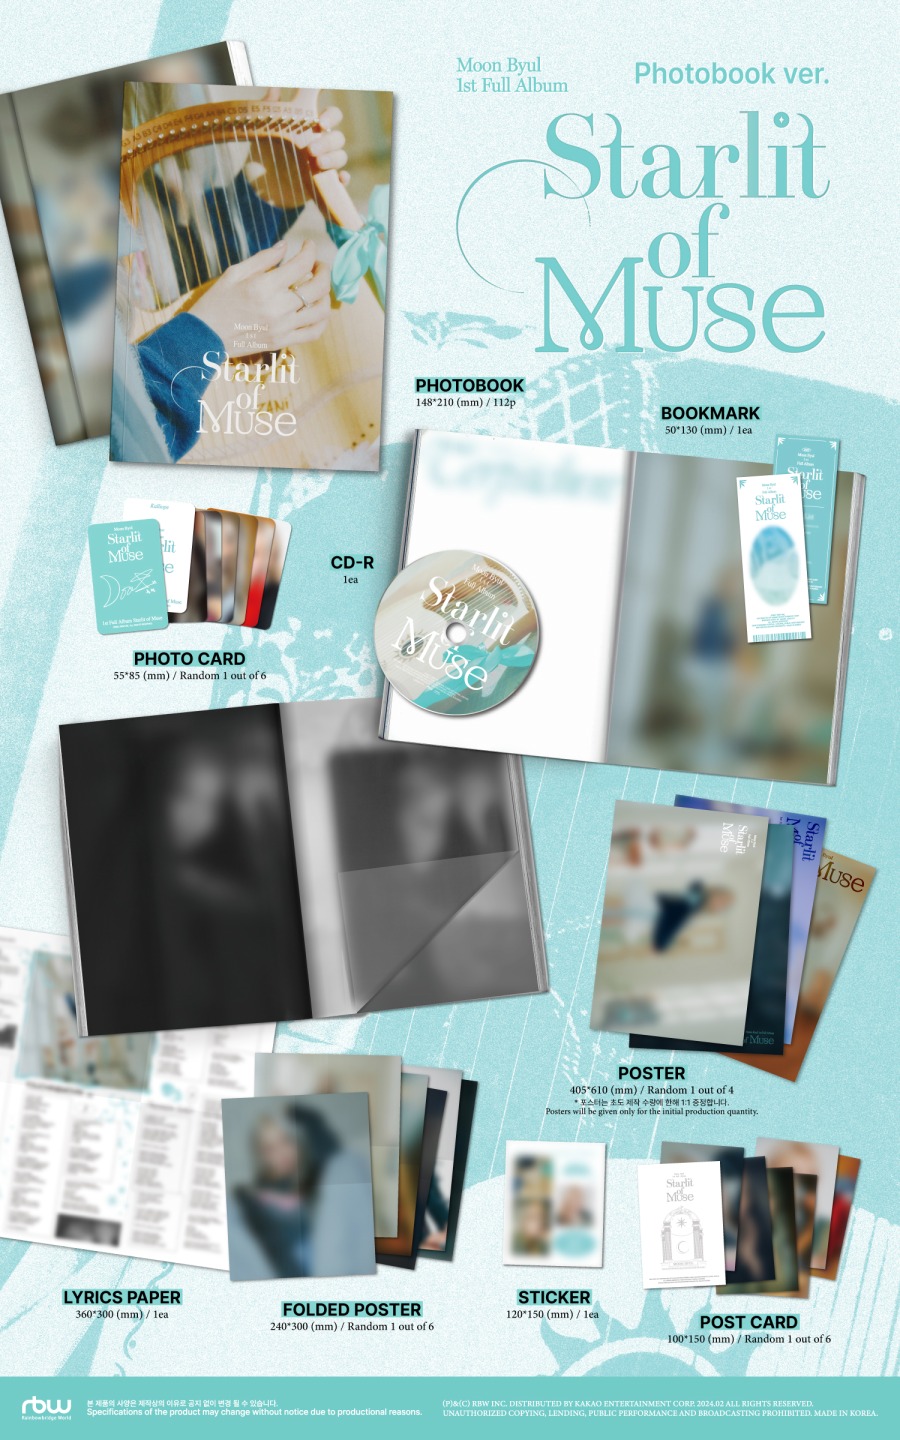 240129.문별 (Moon Byul) 1st Full Album [Starlit of Muse] 앨범 사양 및 예약 판매 안내 2.jpg